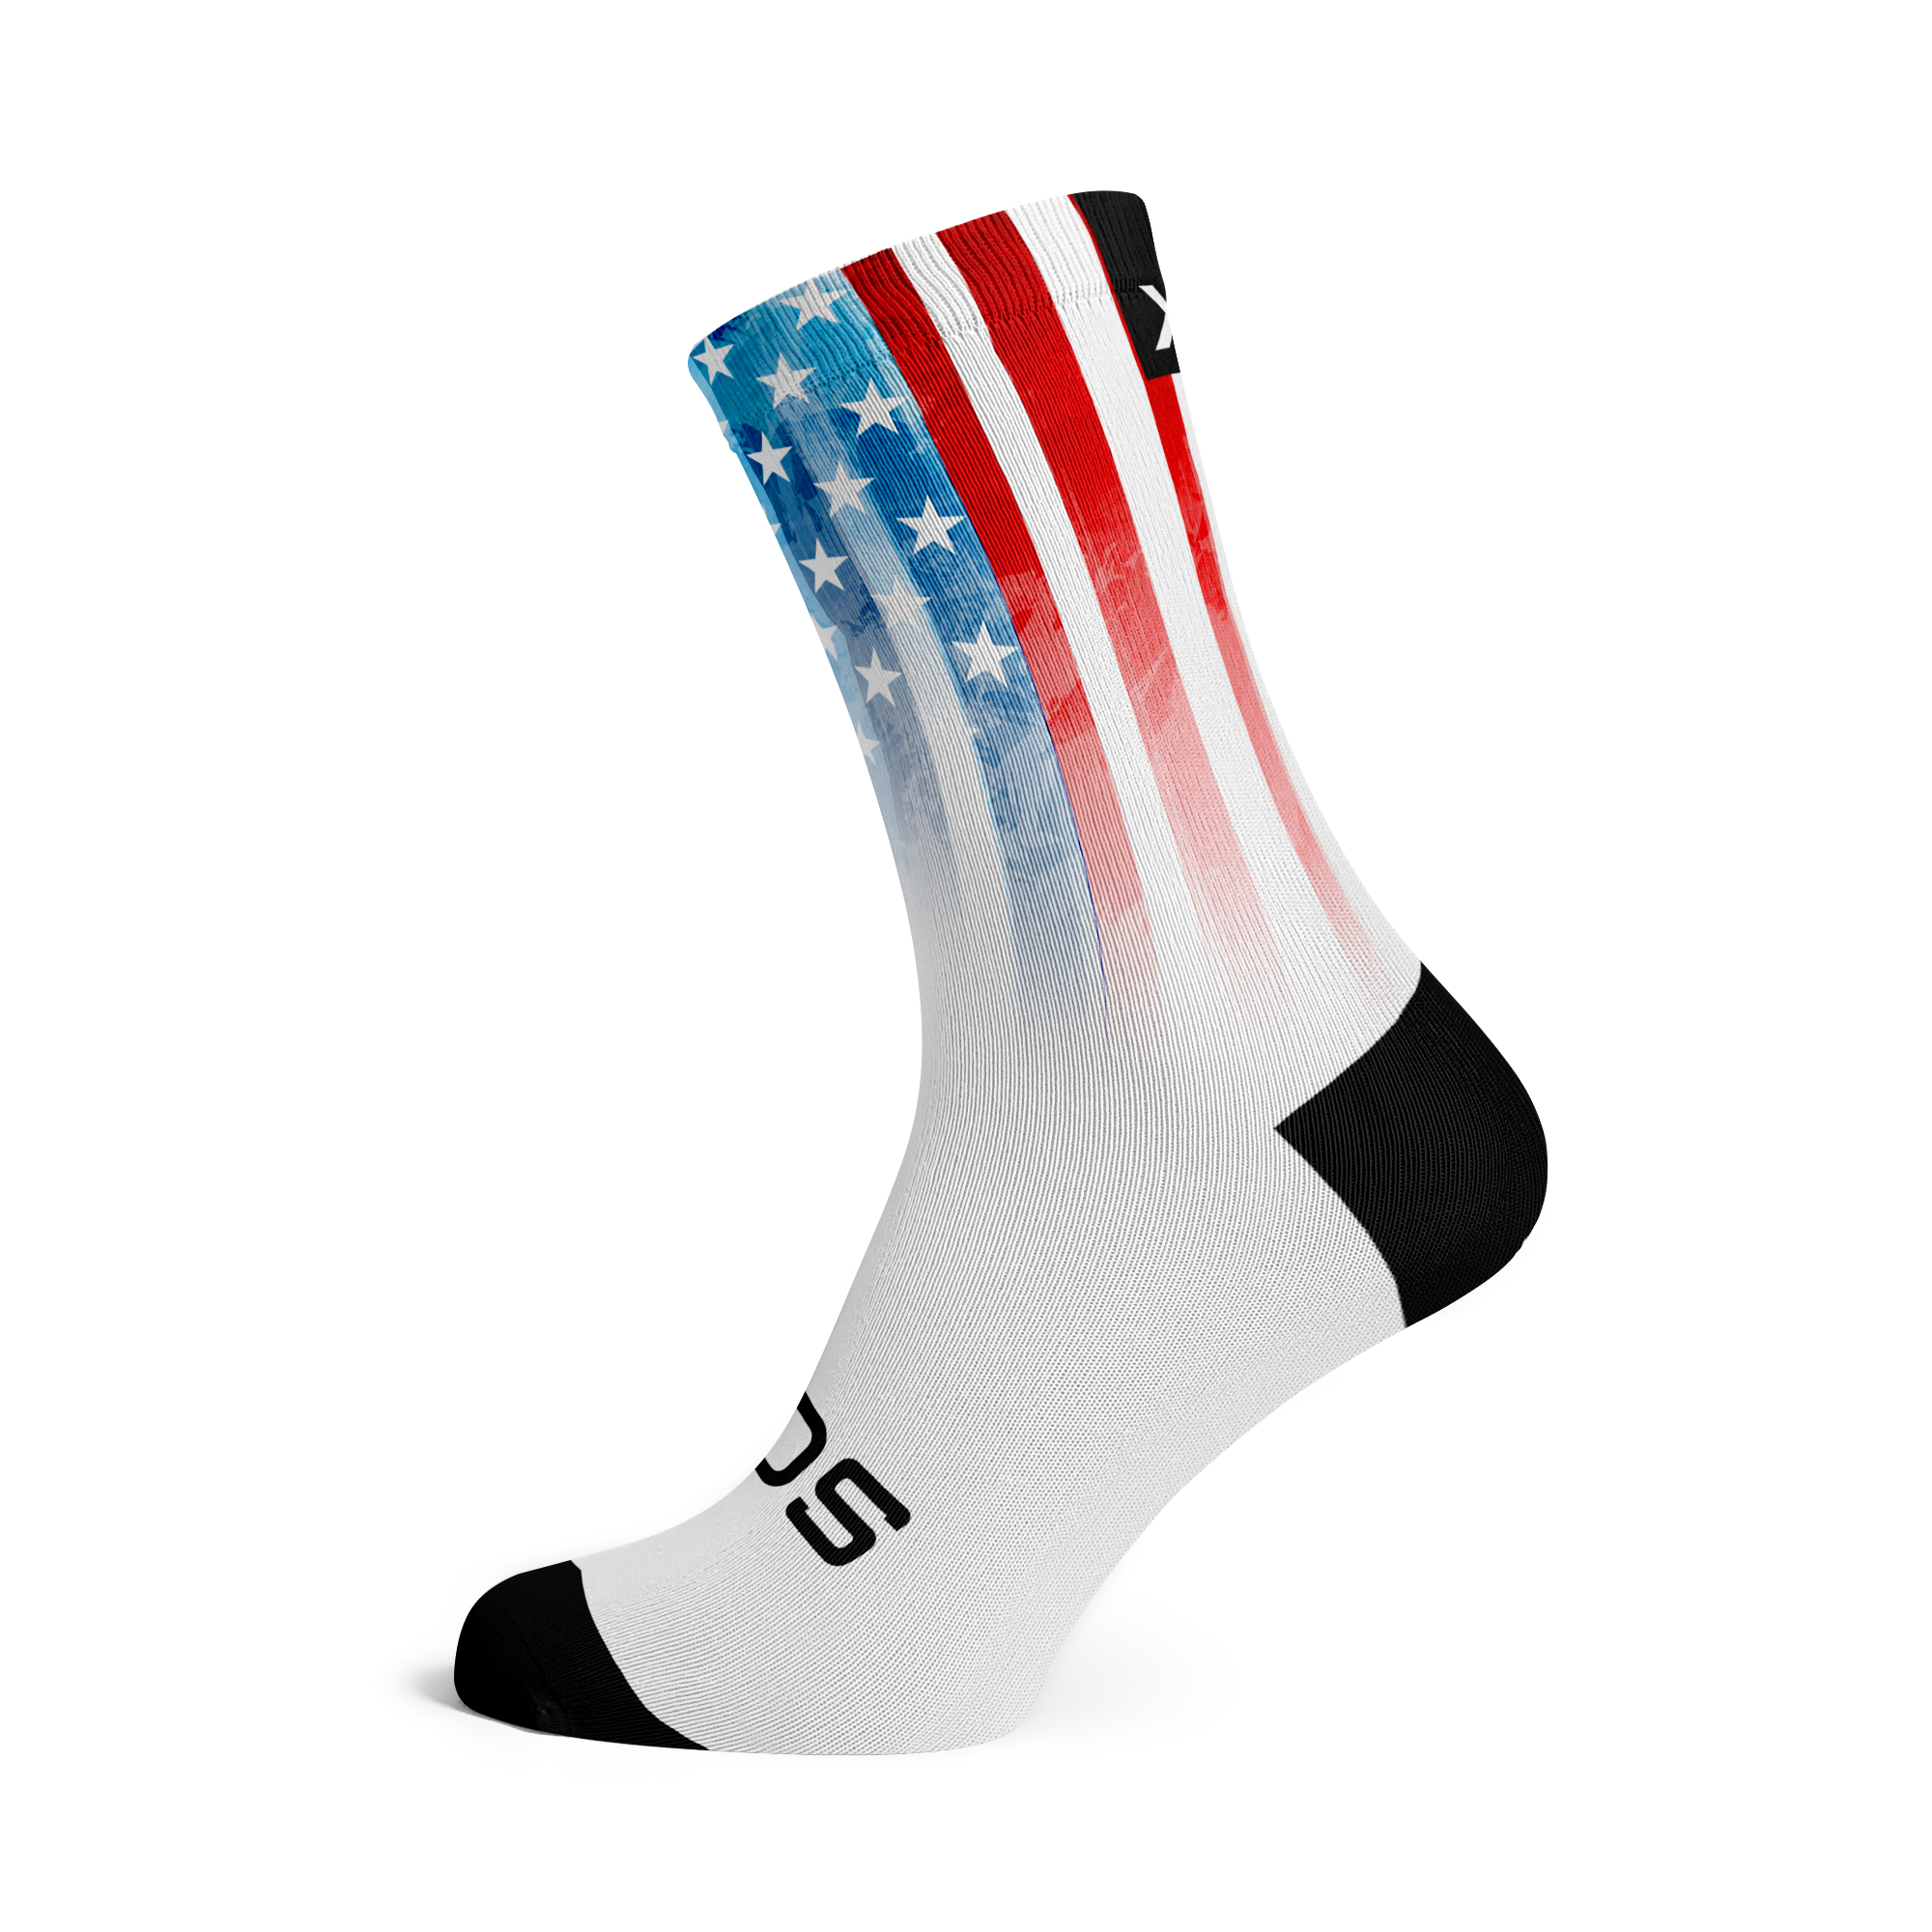 USA Paint Flag Socks